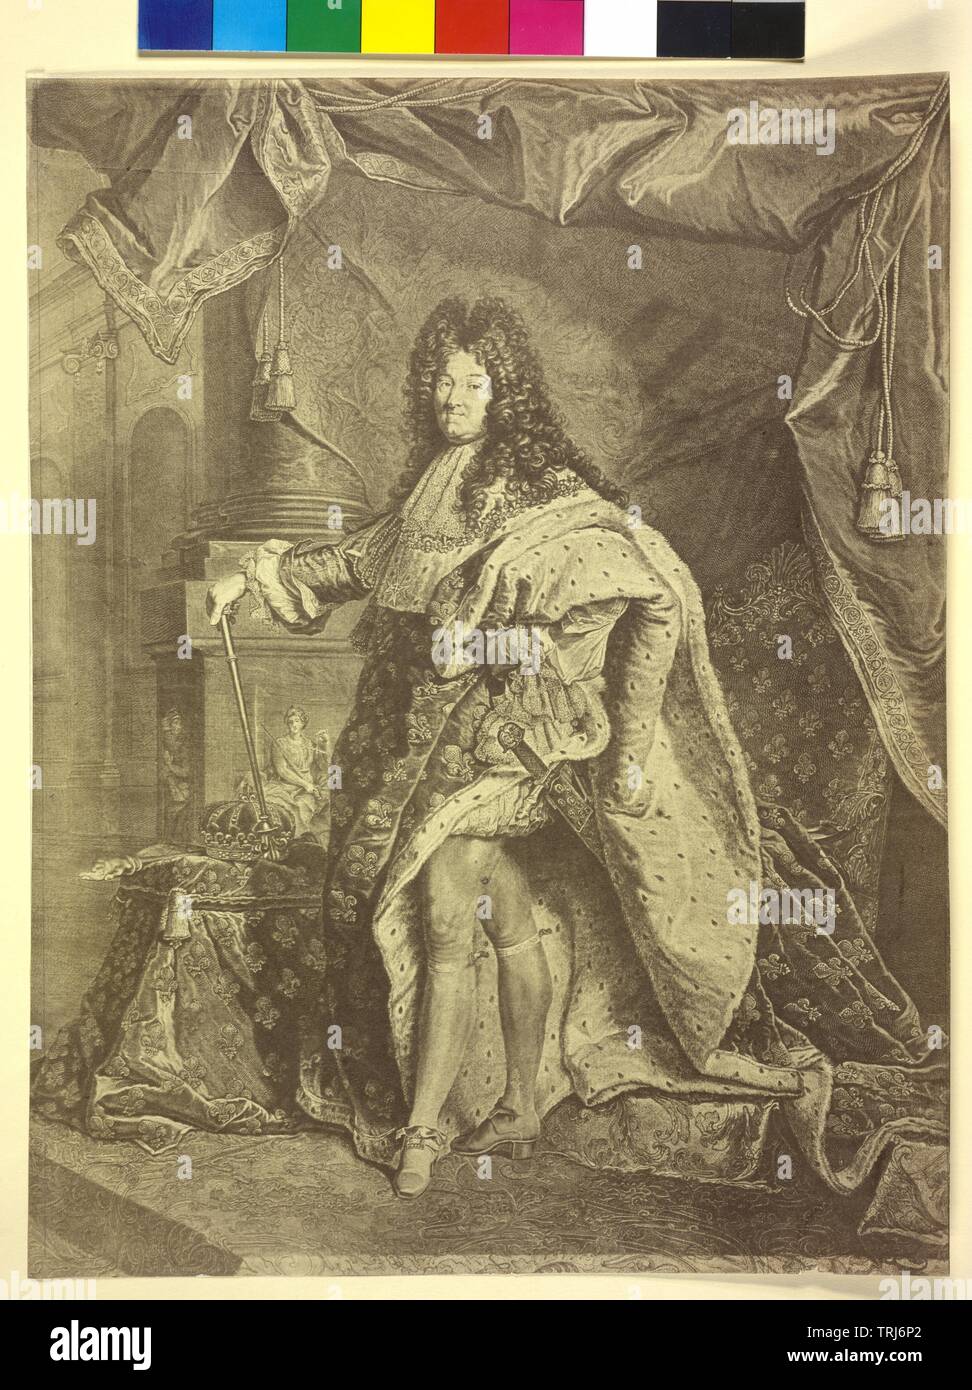 Louis XIV, roi de France, en pleine hauteur dans la robe de couronnement avec l'insigne de la couronne française, royalisme (sceptre, Main de Justice, Joyeuse), l'art photographique basé sur gravure de Pierre Drevet (1712) basée sur la peinture par Hyacinthe Rigaud (1701), , Additional-Rights Clearance-Info-Not-Available- Banque D'Images